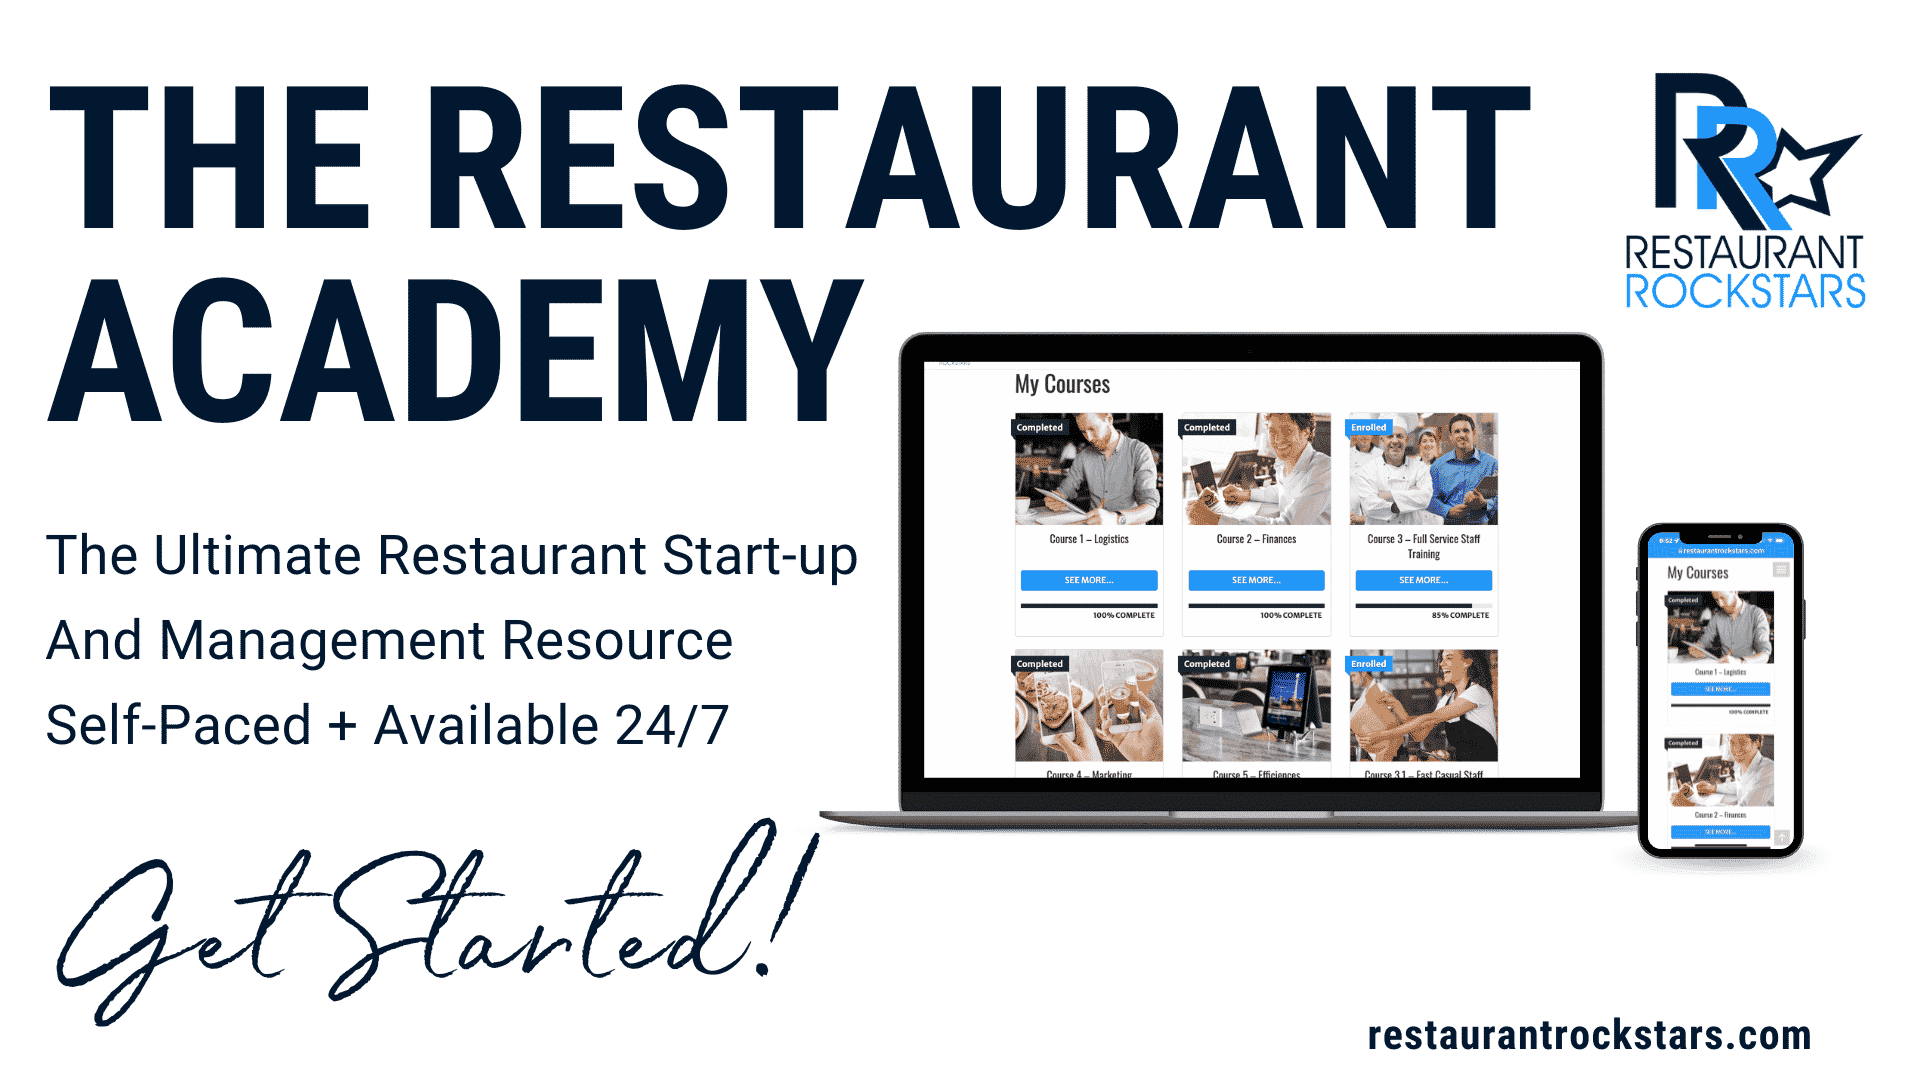 The Restaurant Academy